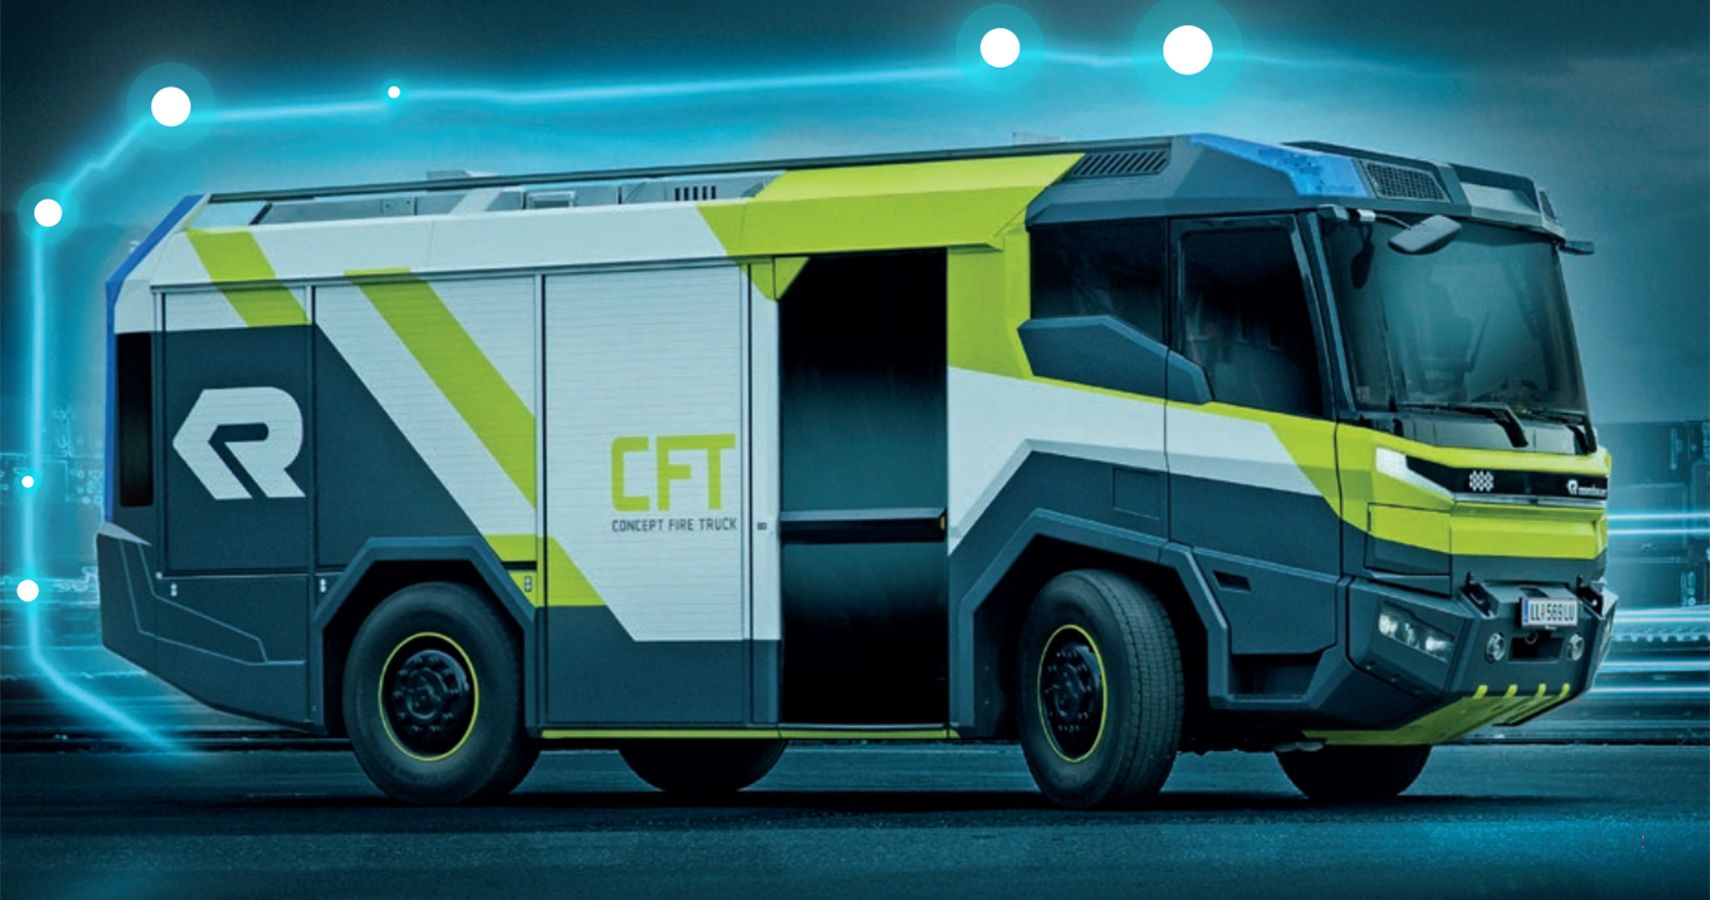 Rosenbauer Concept Fire Truck render